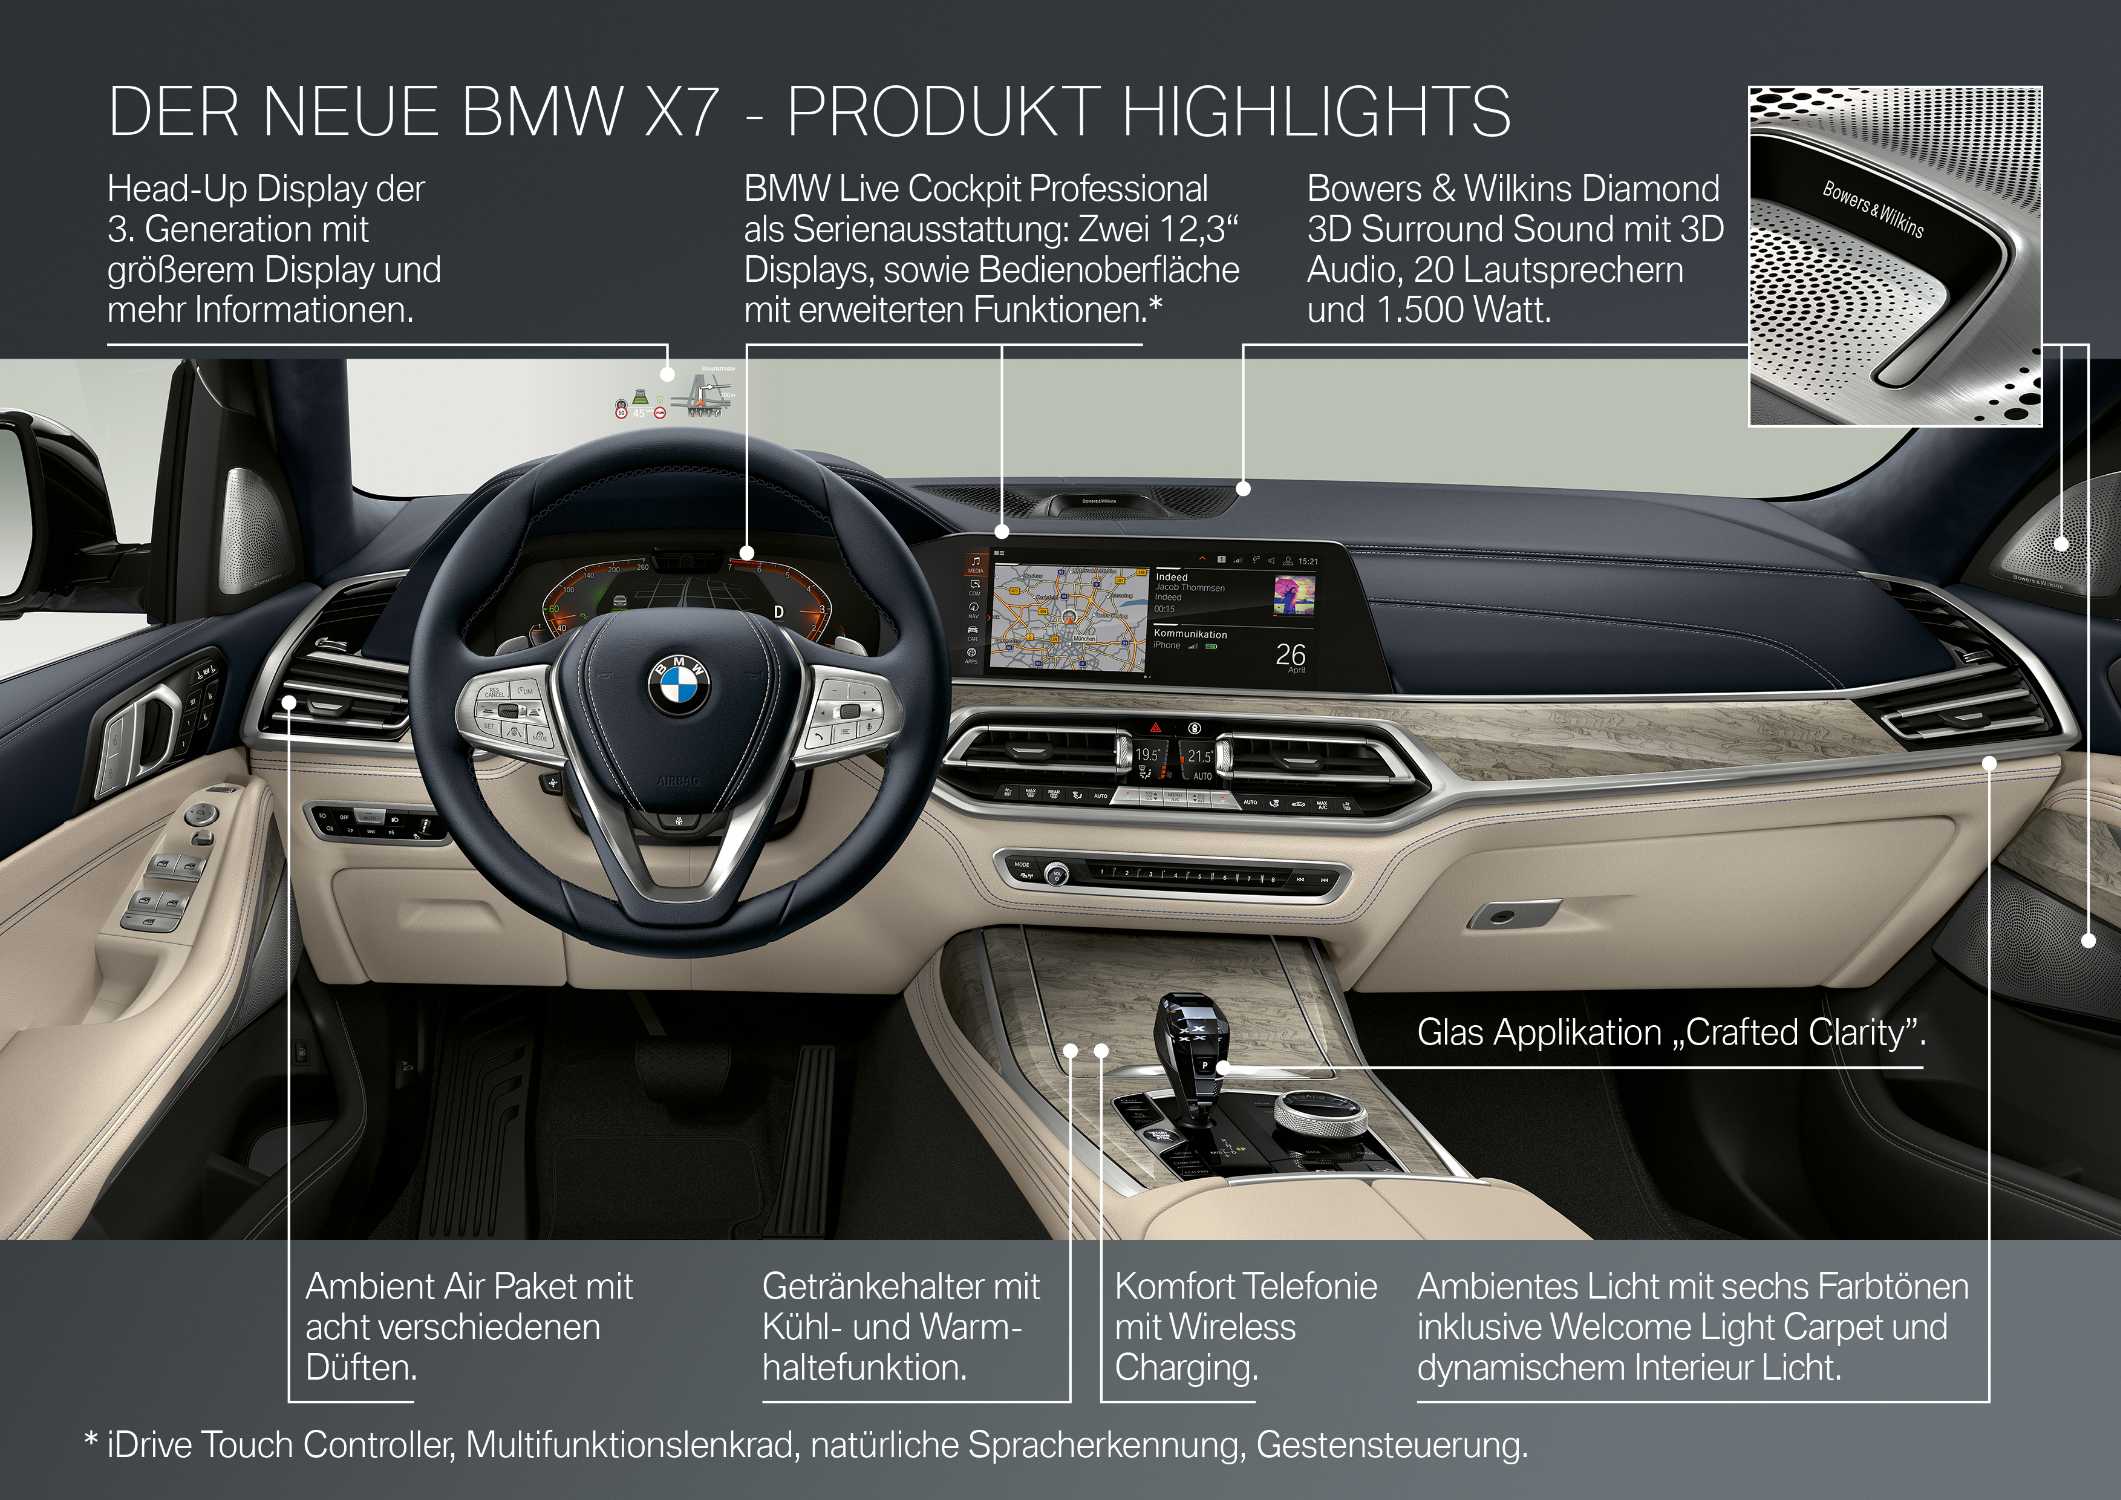 Der erste BMW X7 - Produkthighlights (10/2018).